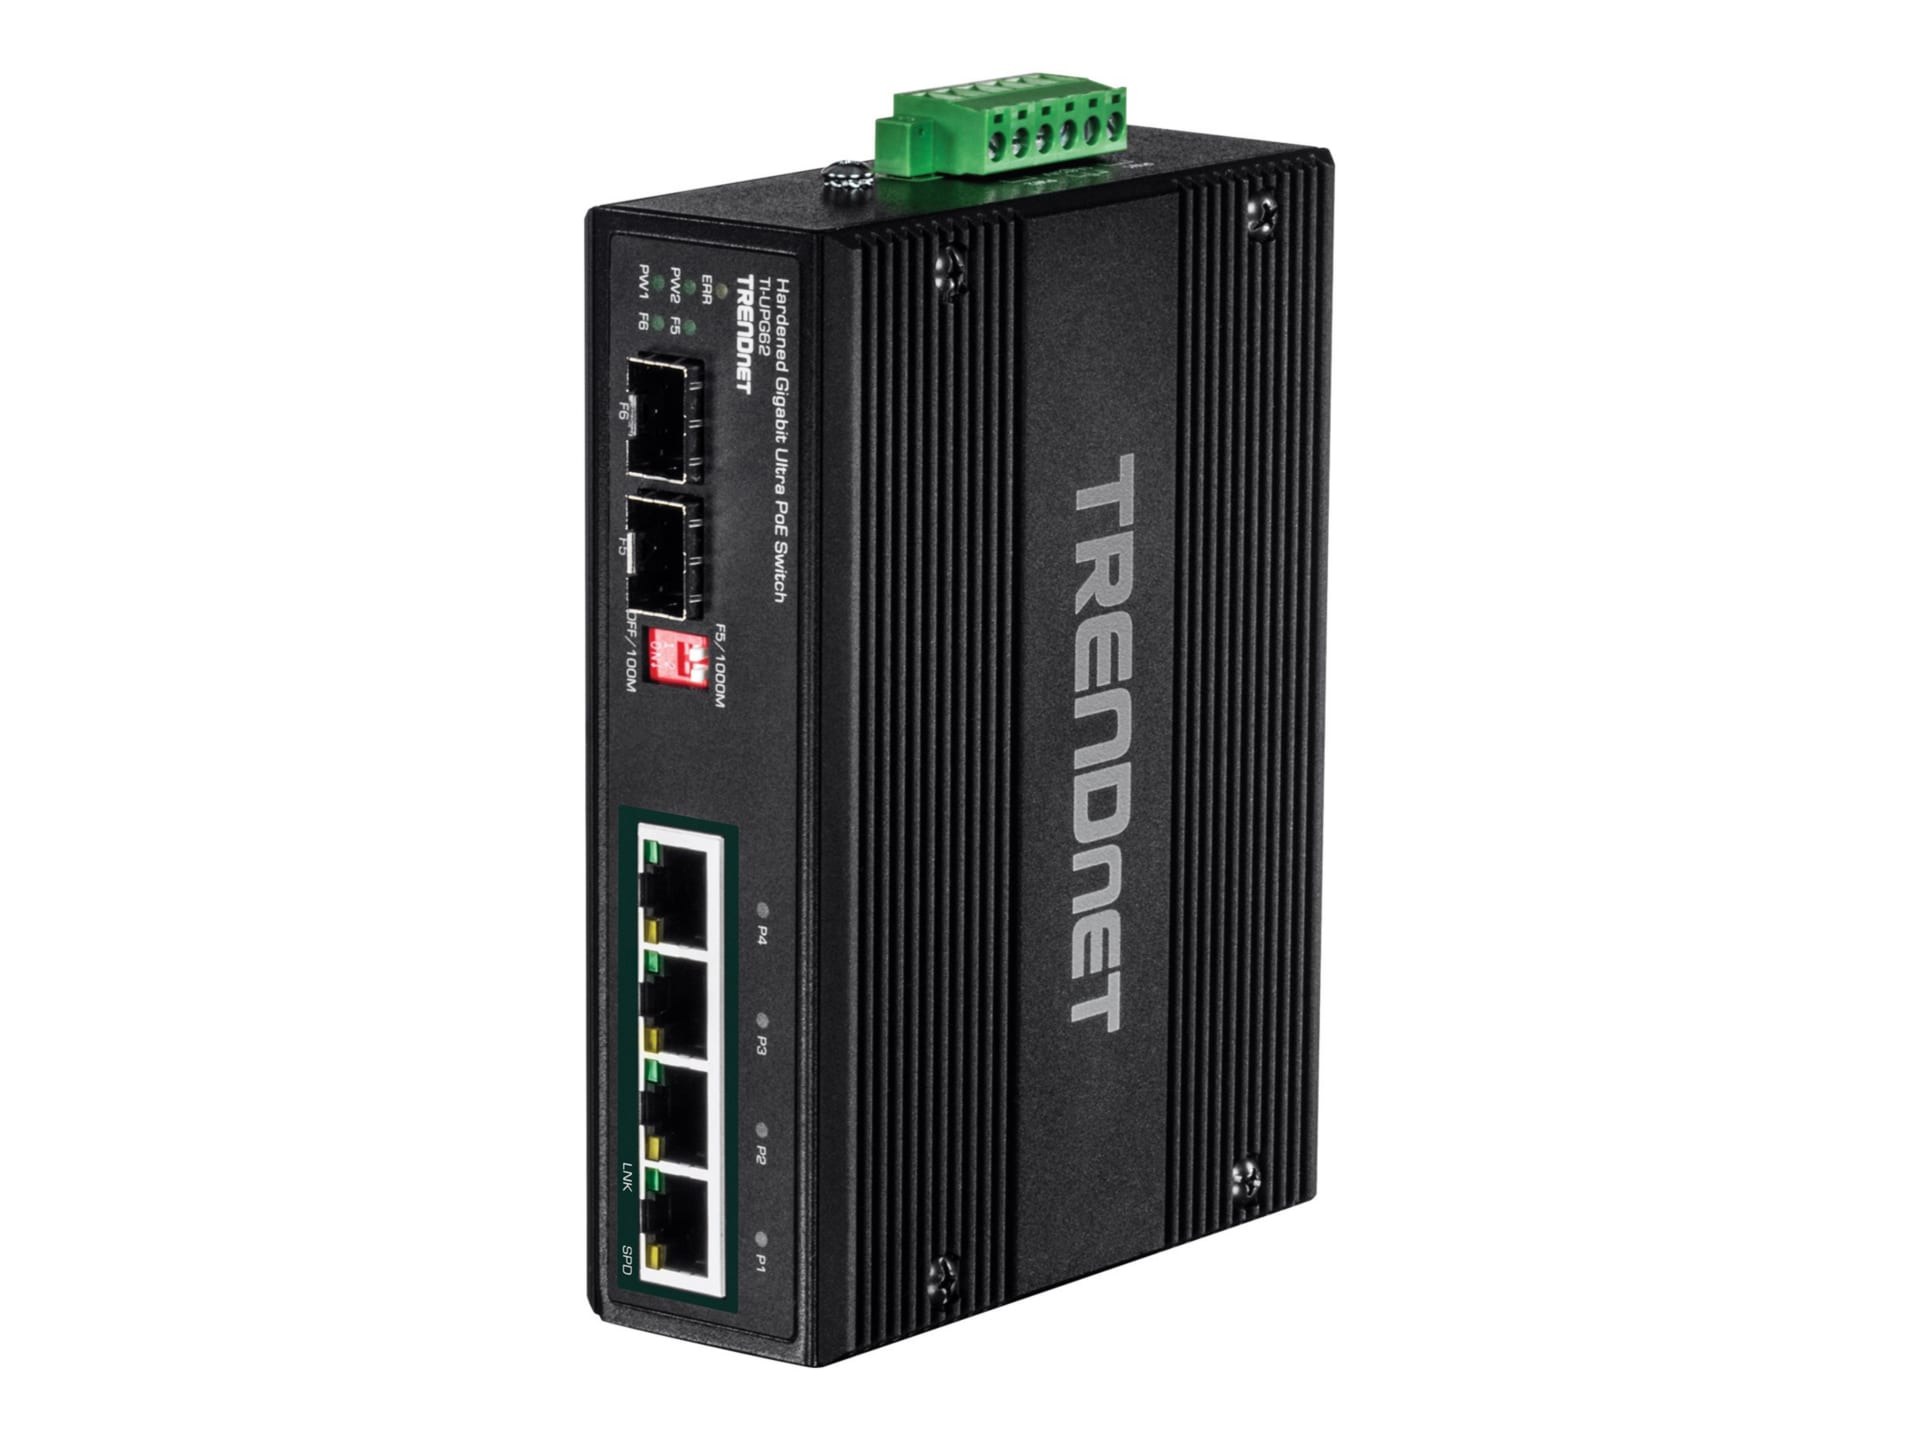 TRENDnet 6-Port Hardened Industrial Gigabit 10/100/1000 Mbps Ultra PoE DIN-